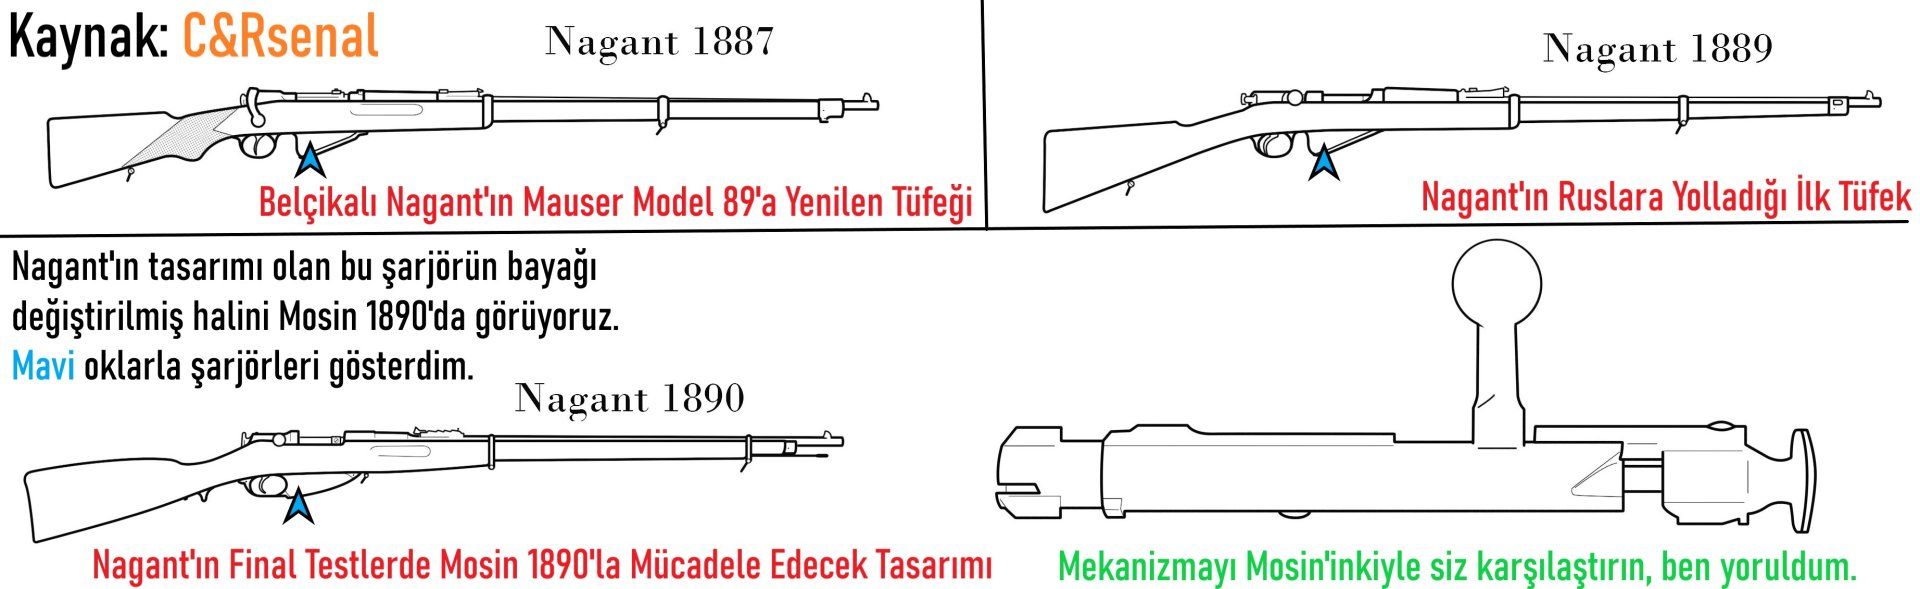 Nagant 1887, 1889 ve 1890 ✓.jpg